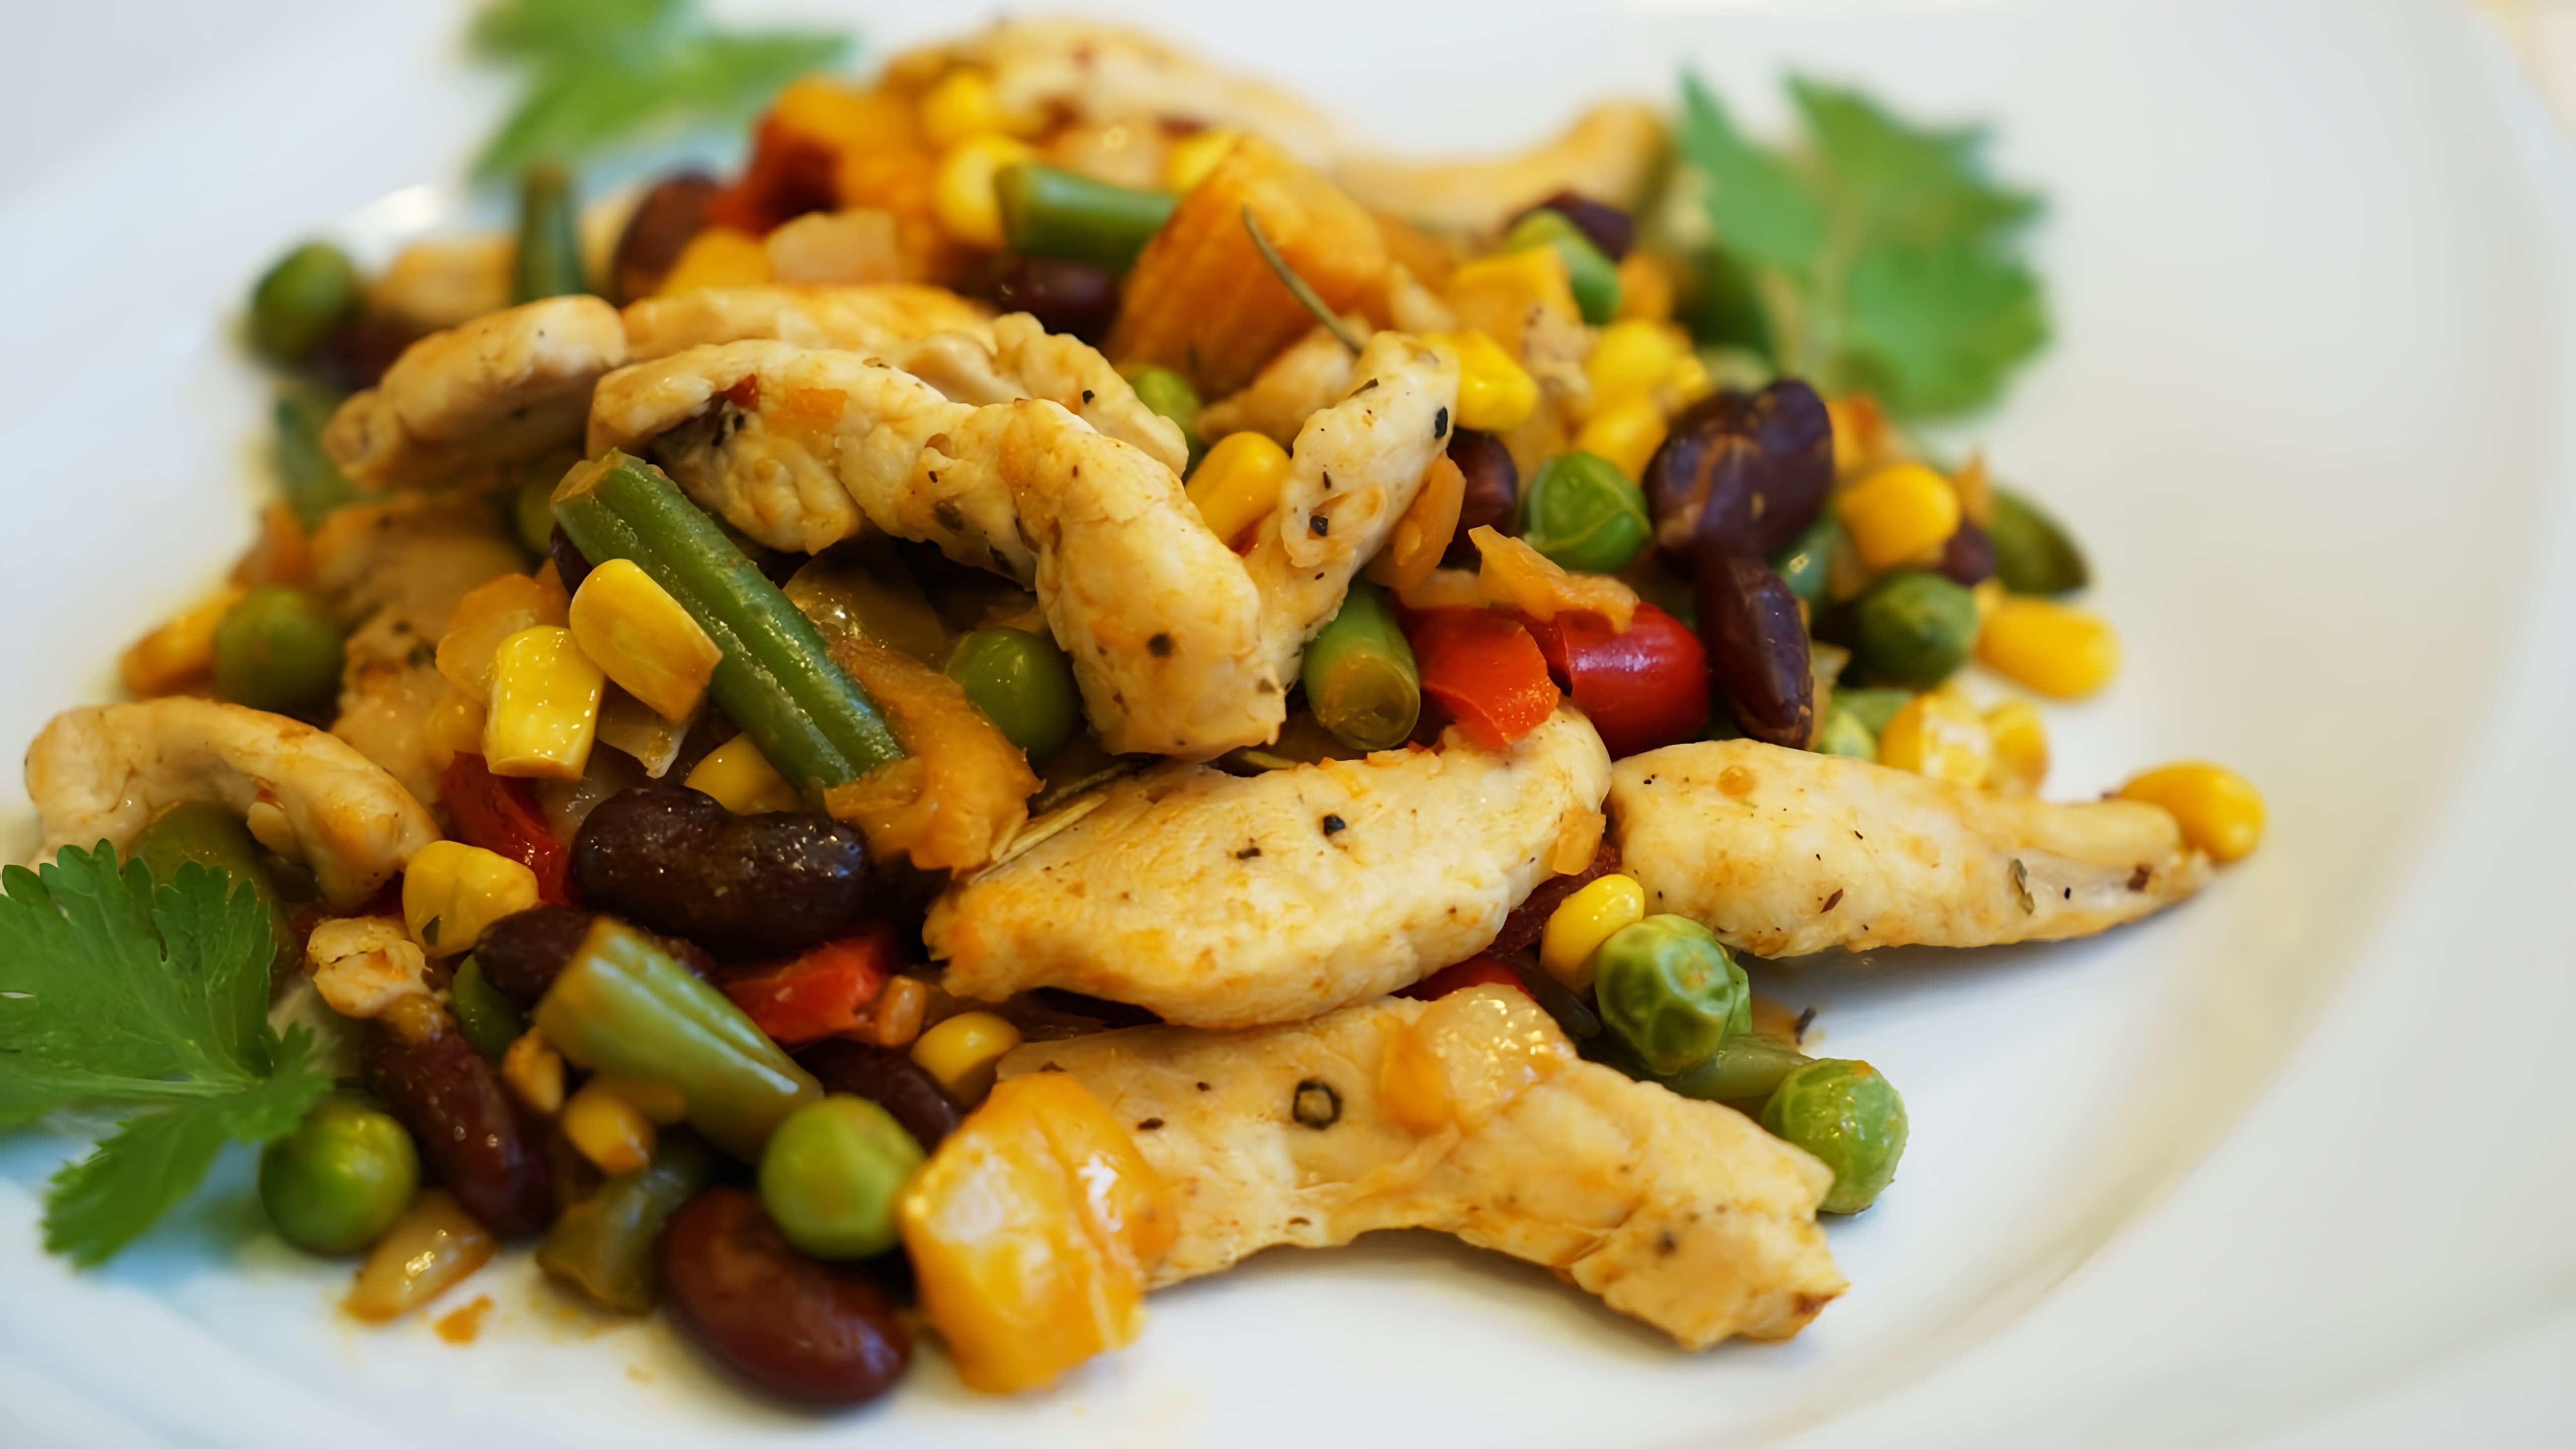 В этом видео демонстрируется рецепт приготовления куриного филе с овощами